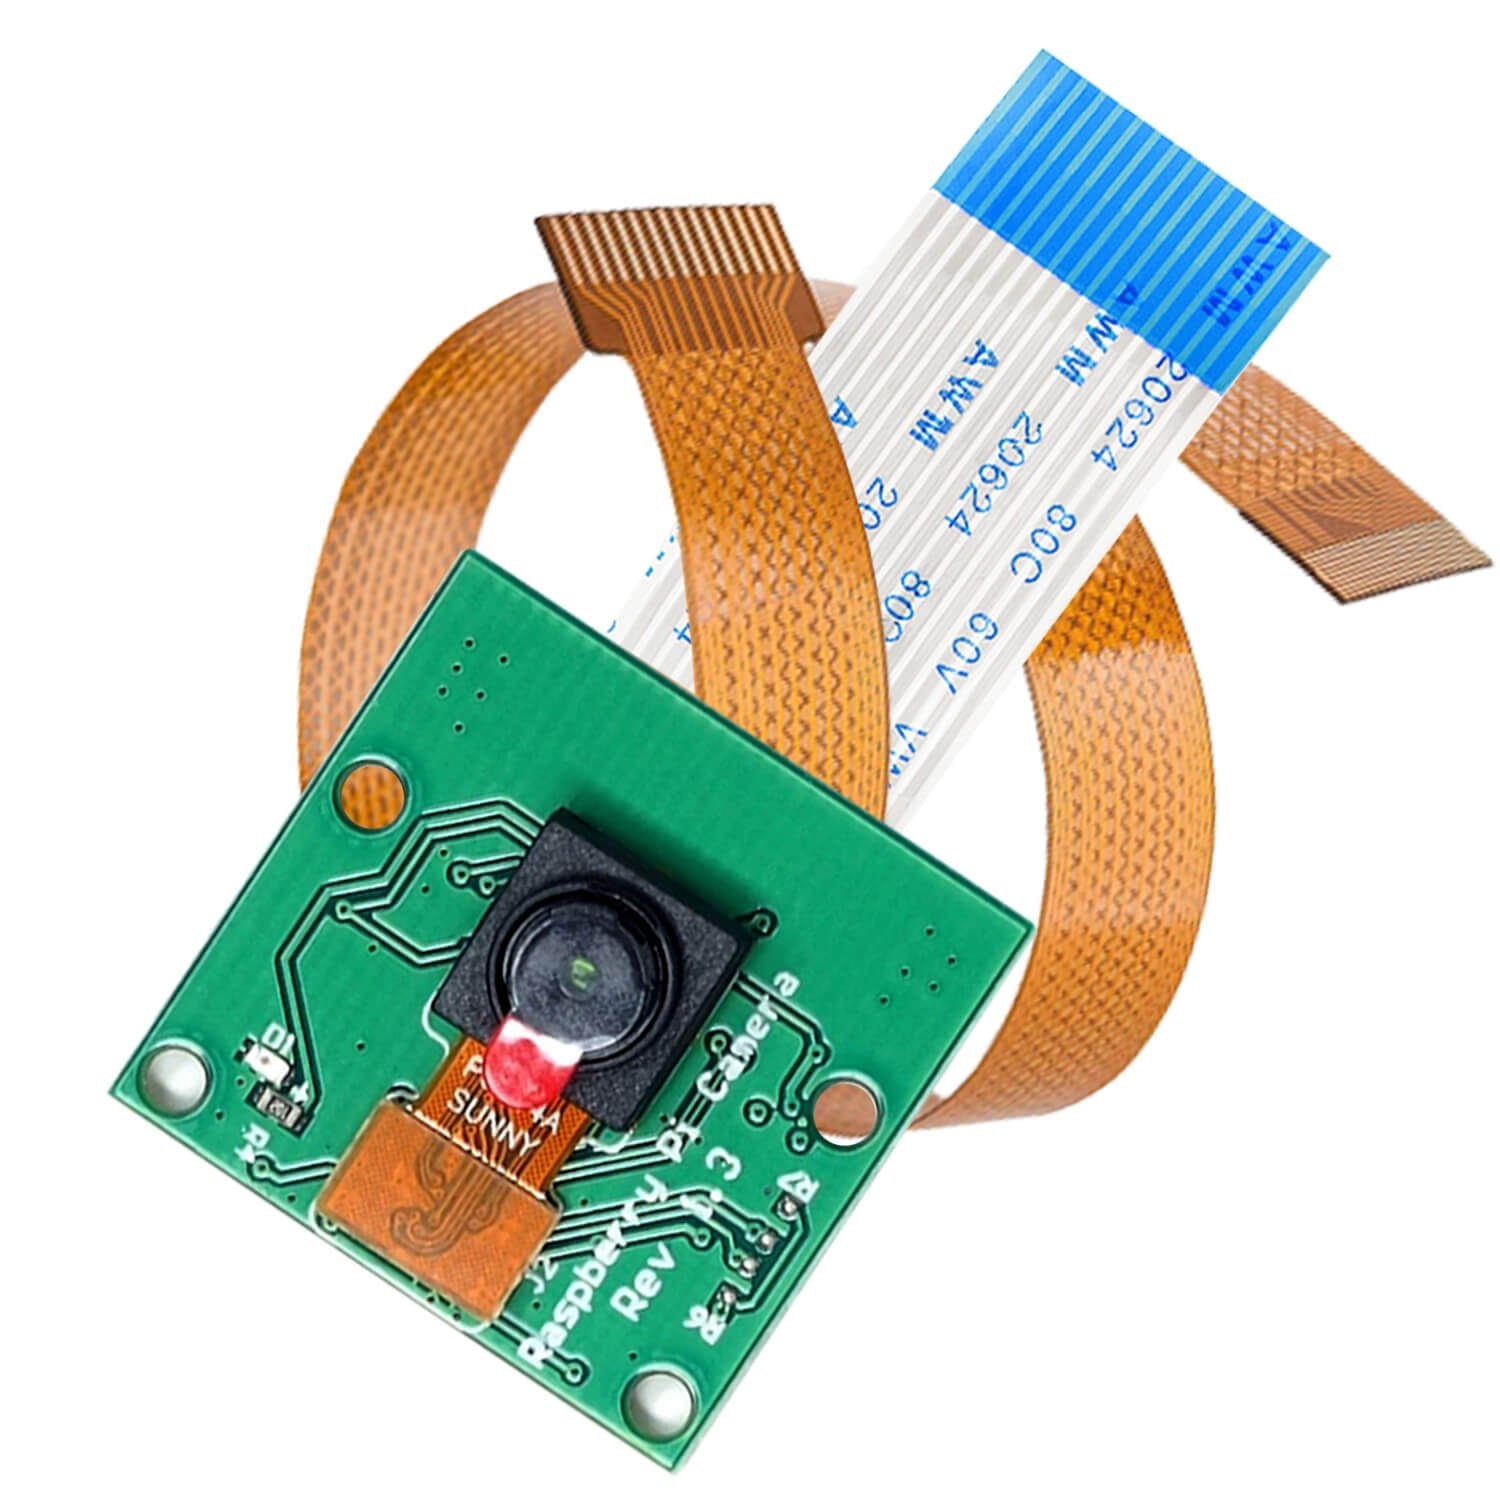 Kamera mit 15cm Flexkabel für Raspberry Pi und 30cm Flexkabel für Raspberry Pi Zero - AZ-Delivery